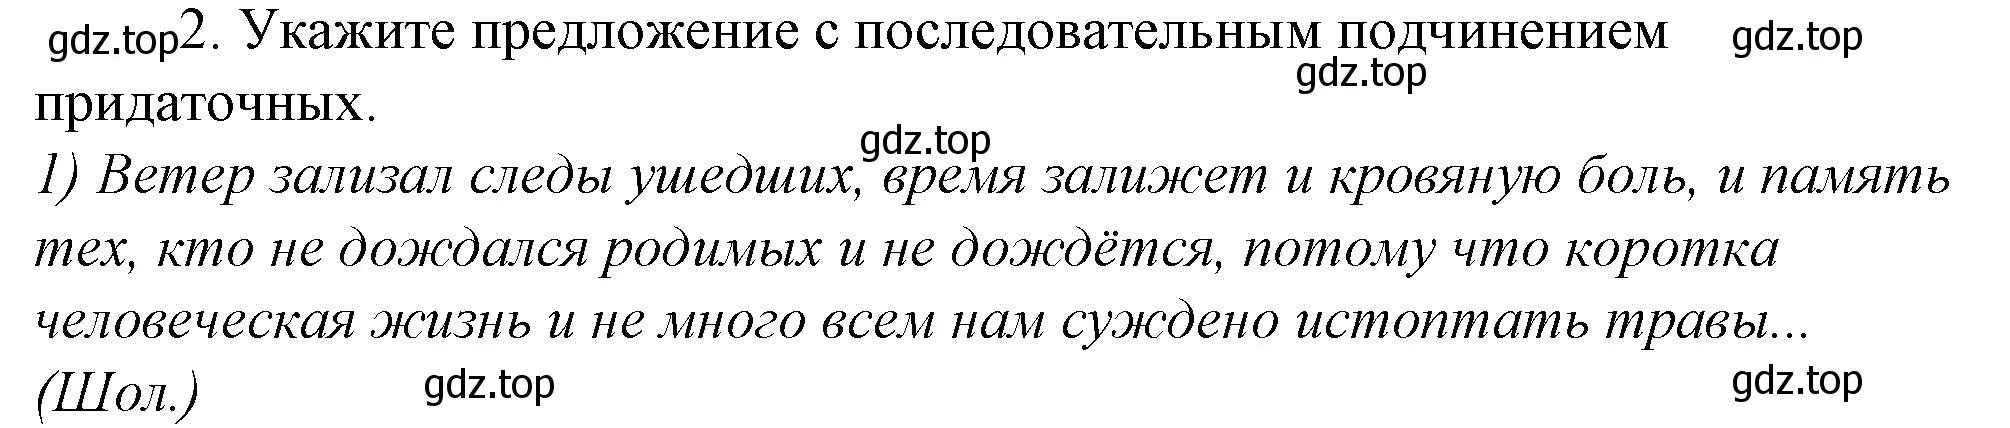 Решение 4. номер 2 (страница 168) гдз по русскому языку 10-11 класс Гольцова, Шамшин, учебник 2 часть